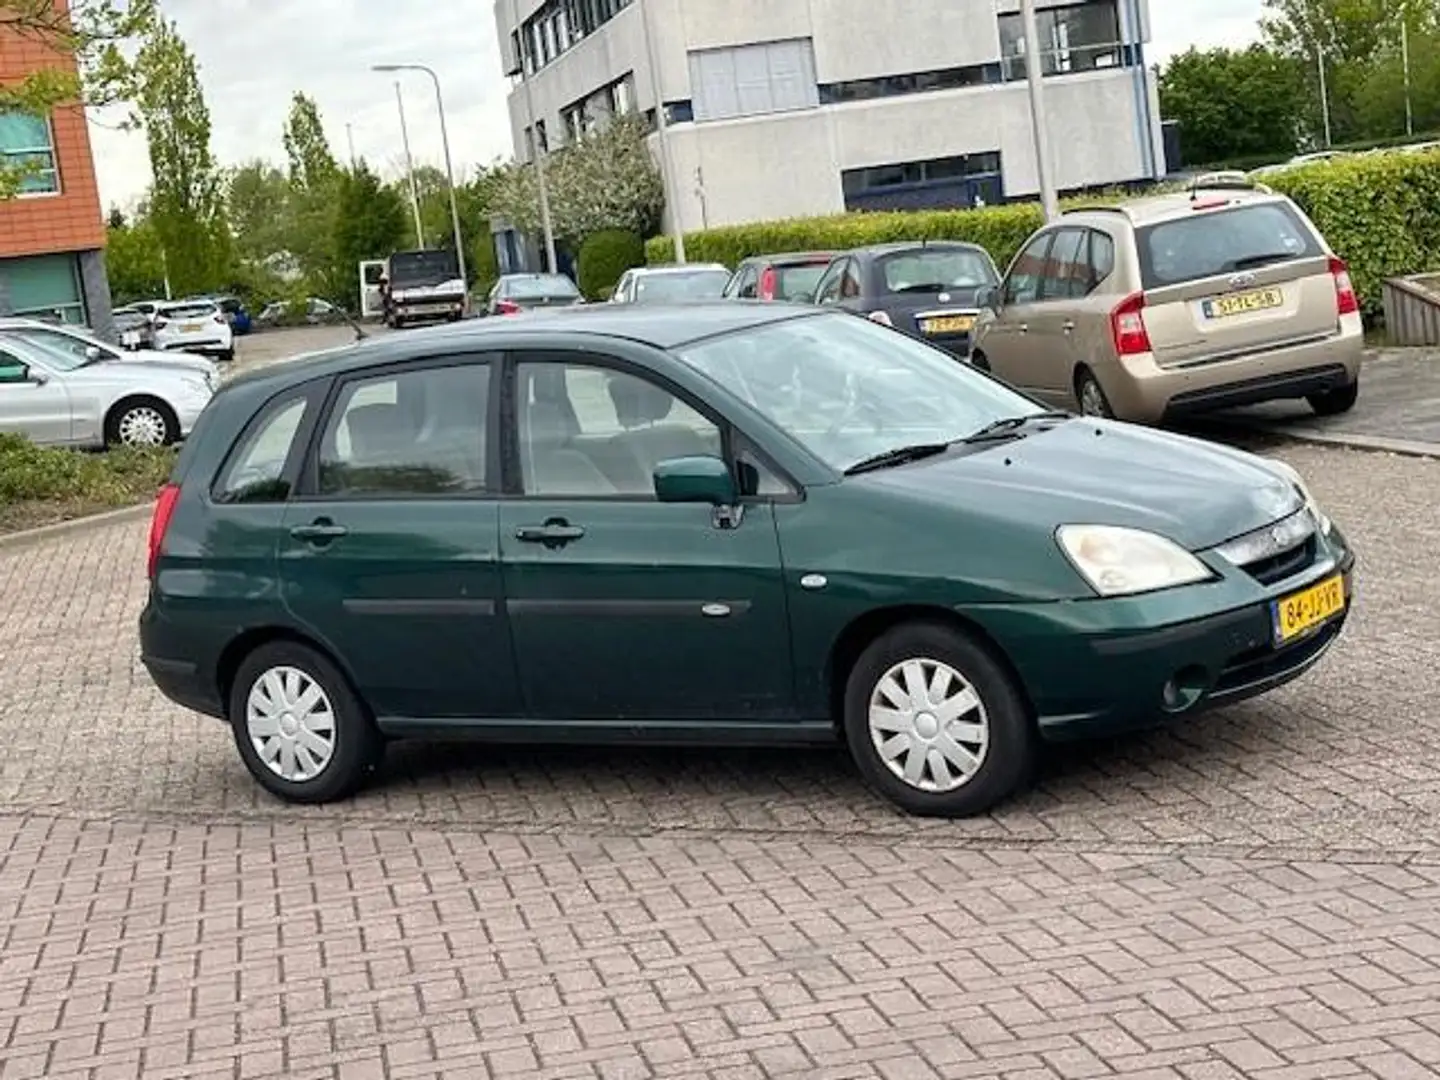 Suzuki Liana 1.6 GX,bj.2002,kleur:groen,5 deurs,trekhaak,airco, zelena - 2